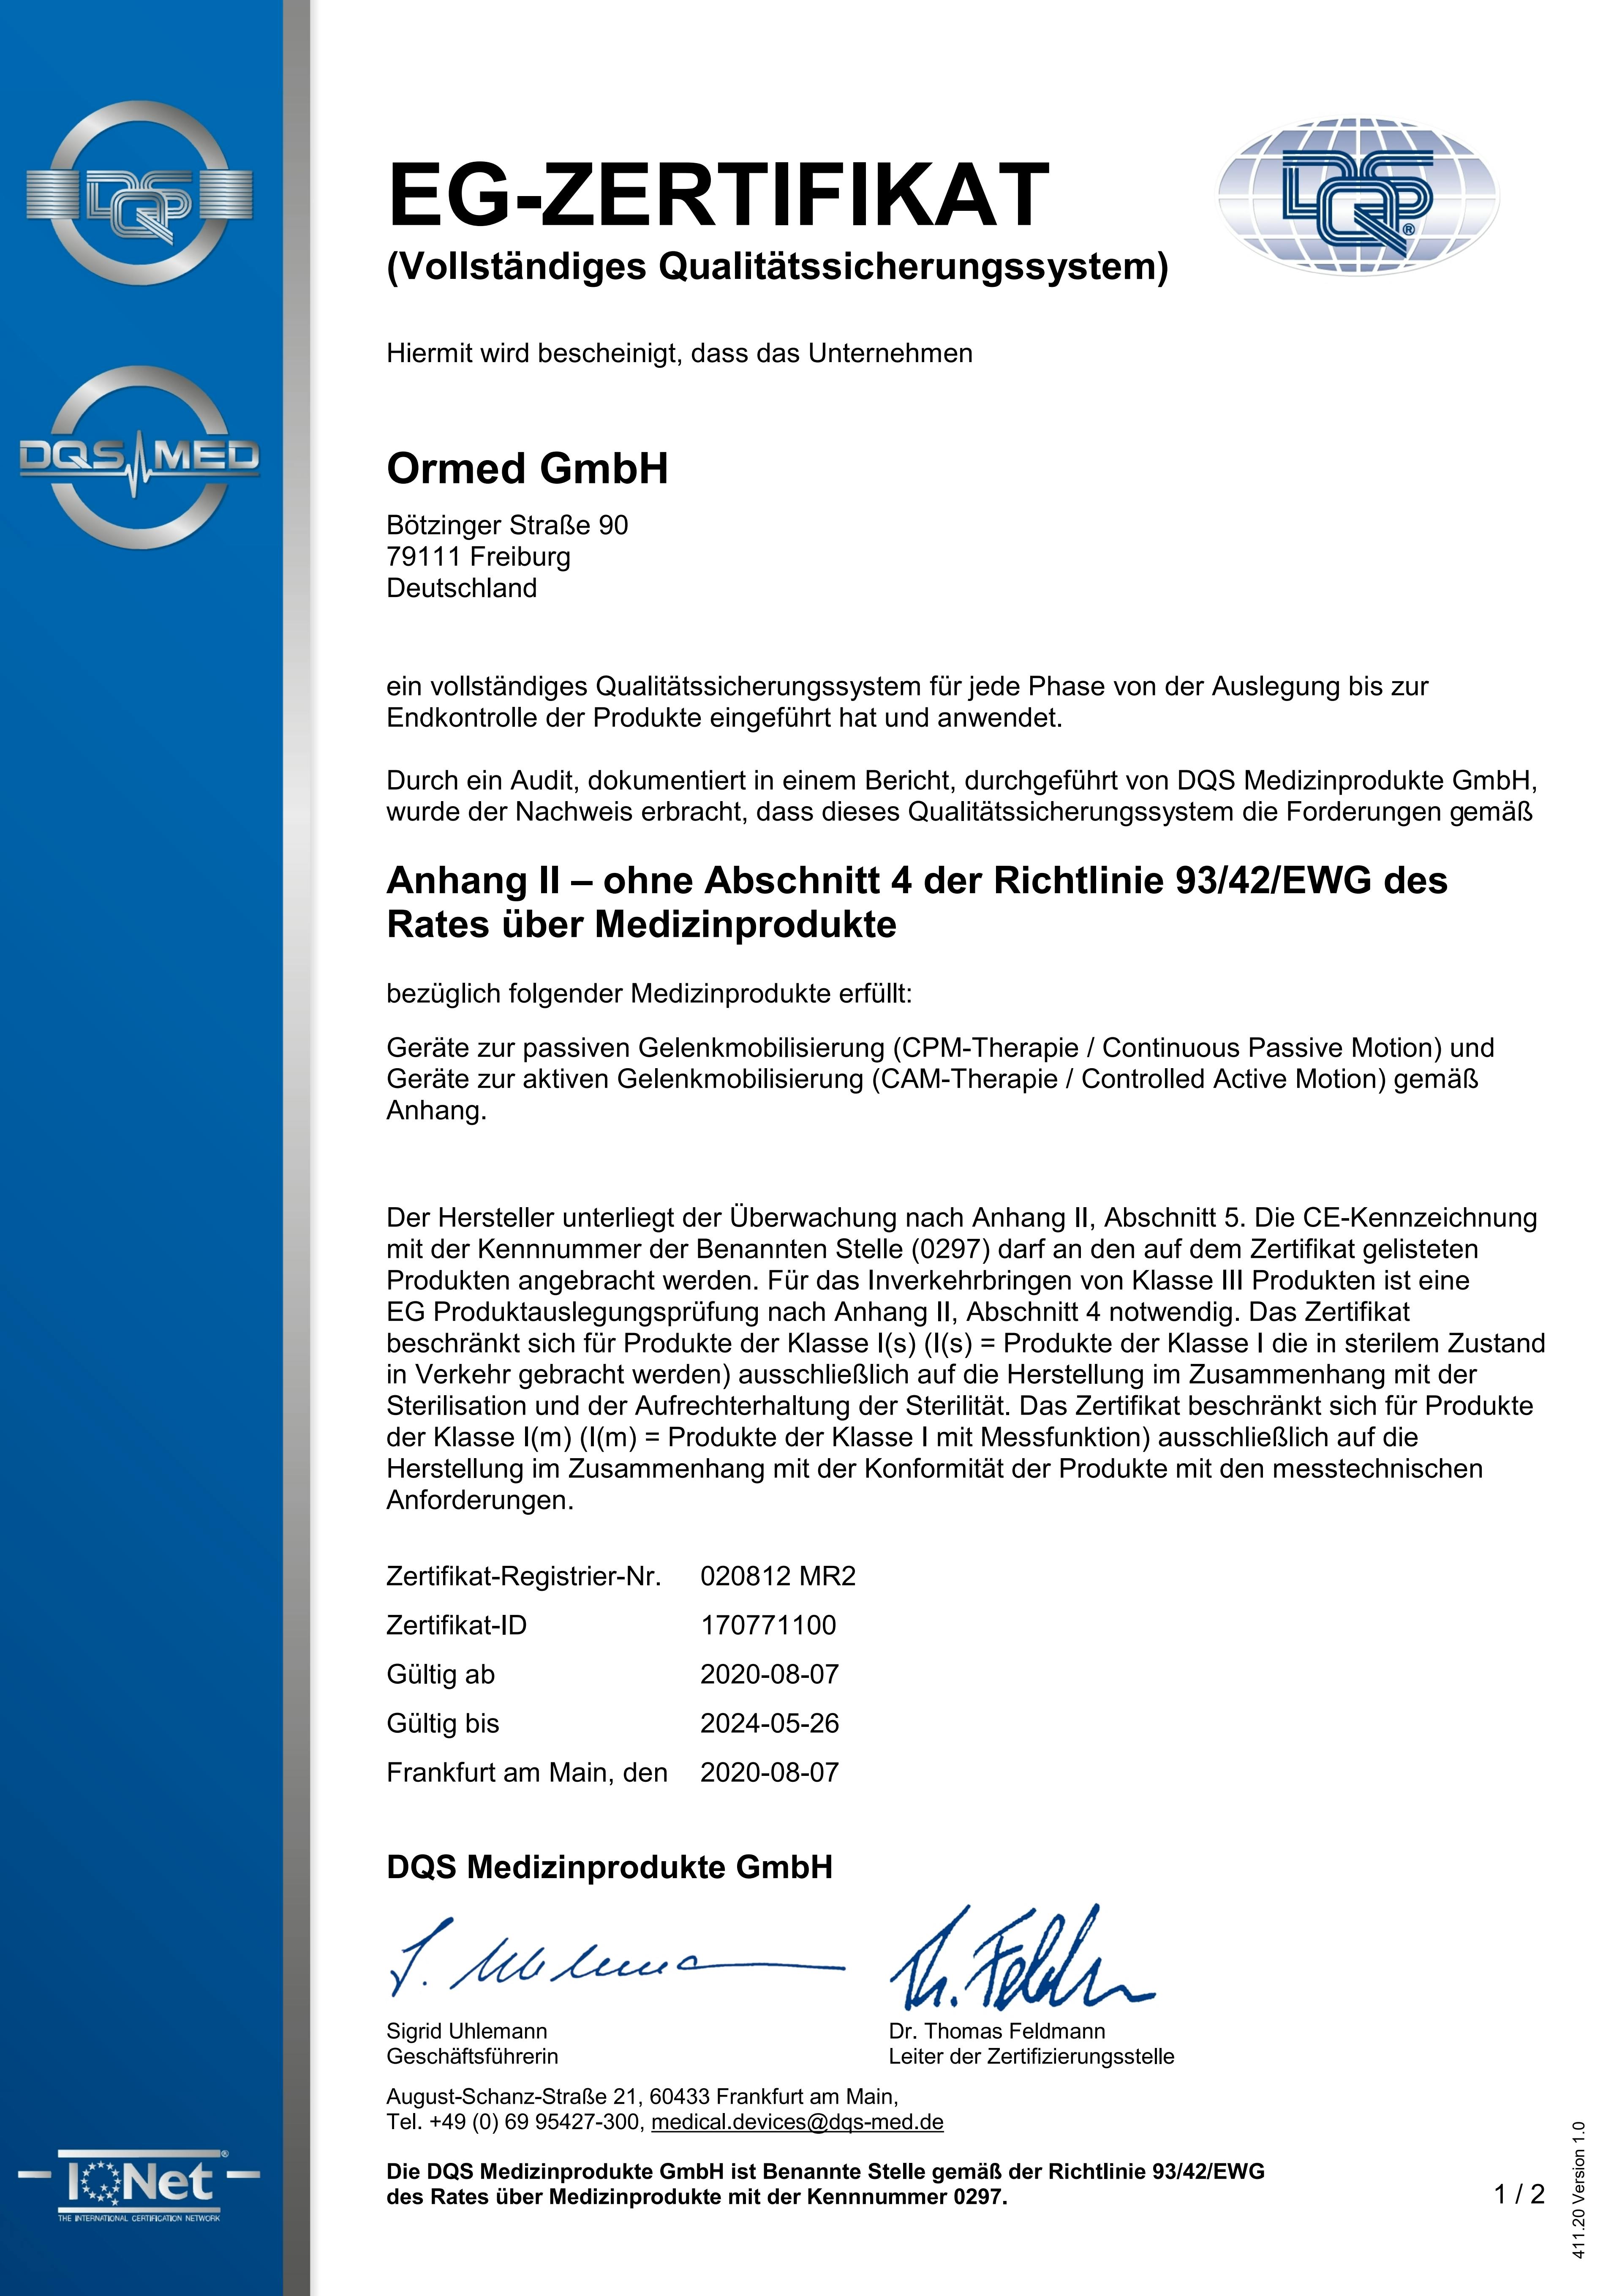 020812 EG-Zertifikat - Anhang II - MR2 2020-08-07 deutsch.pdf